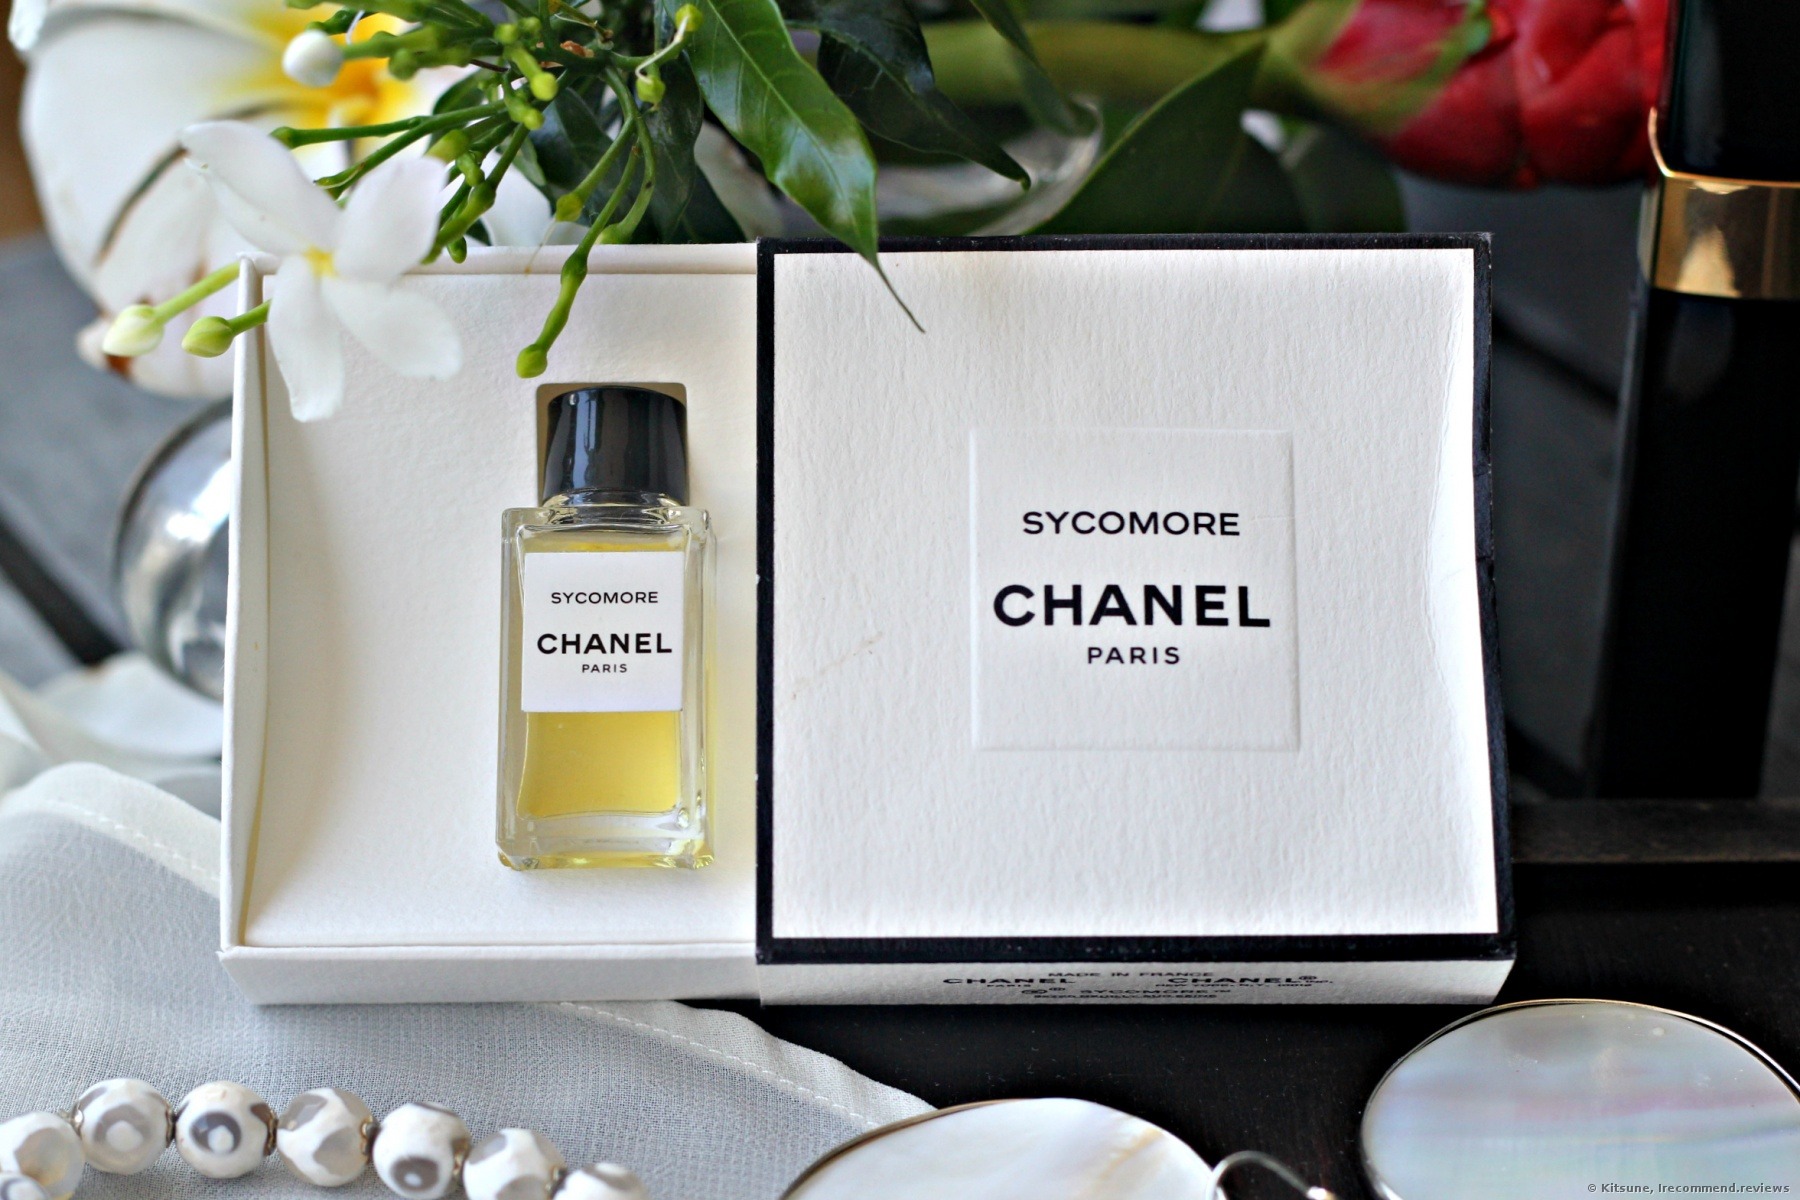 parfum chanel gardenia eau